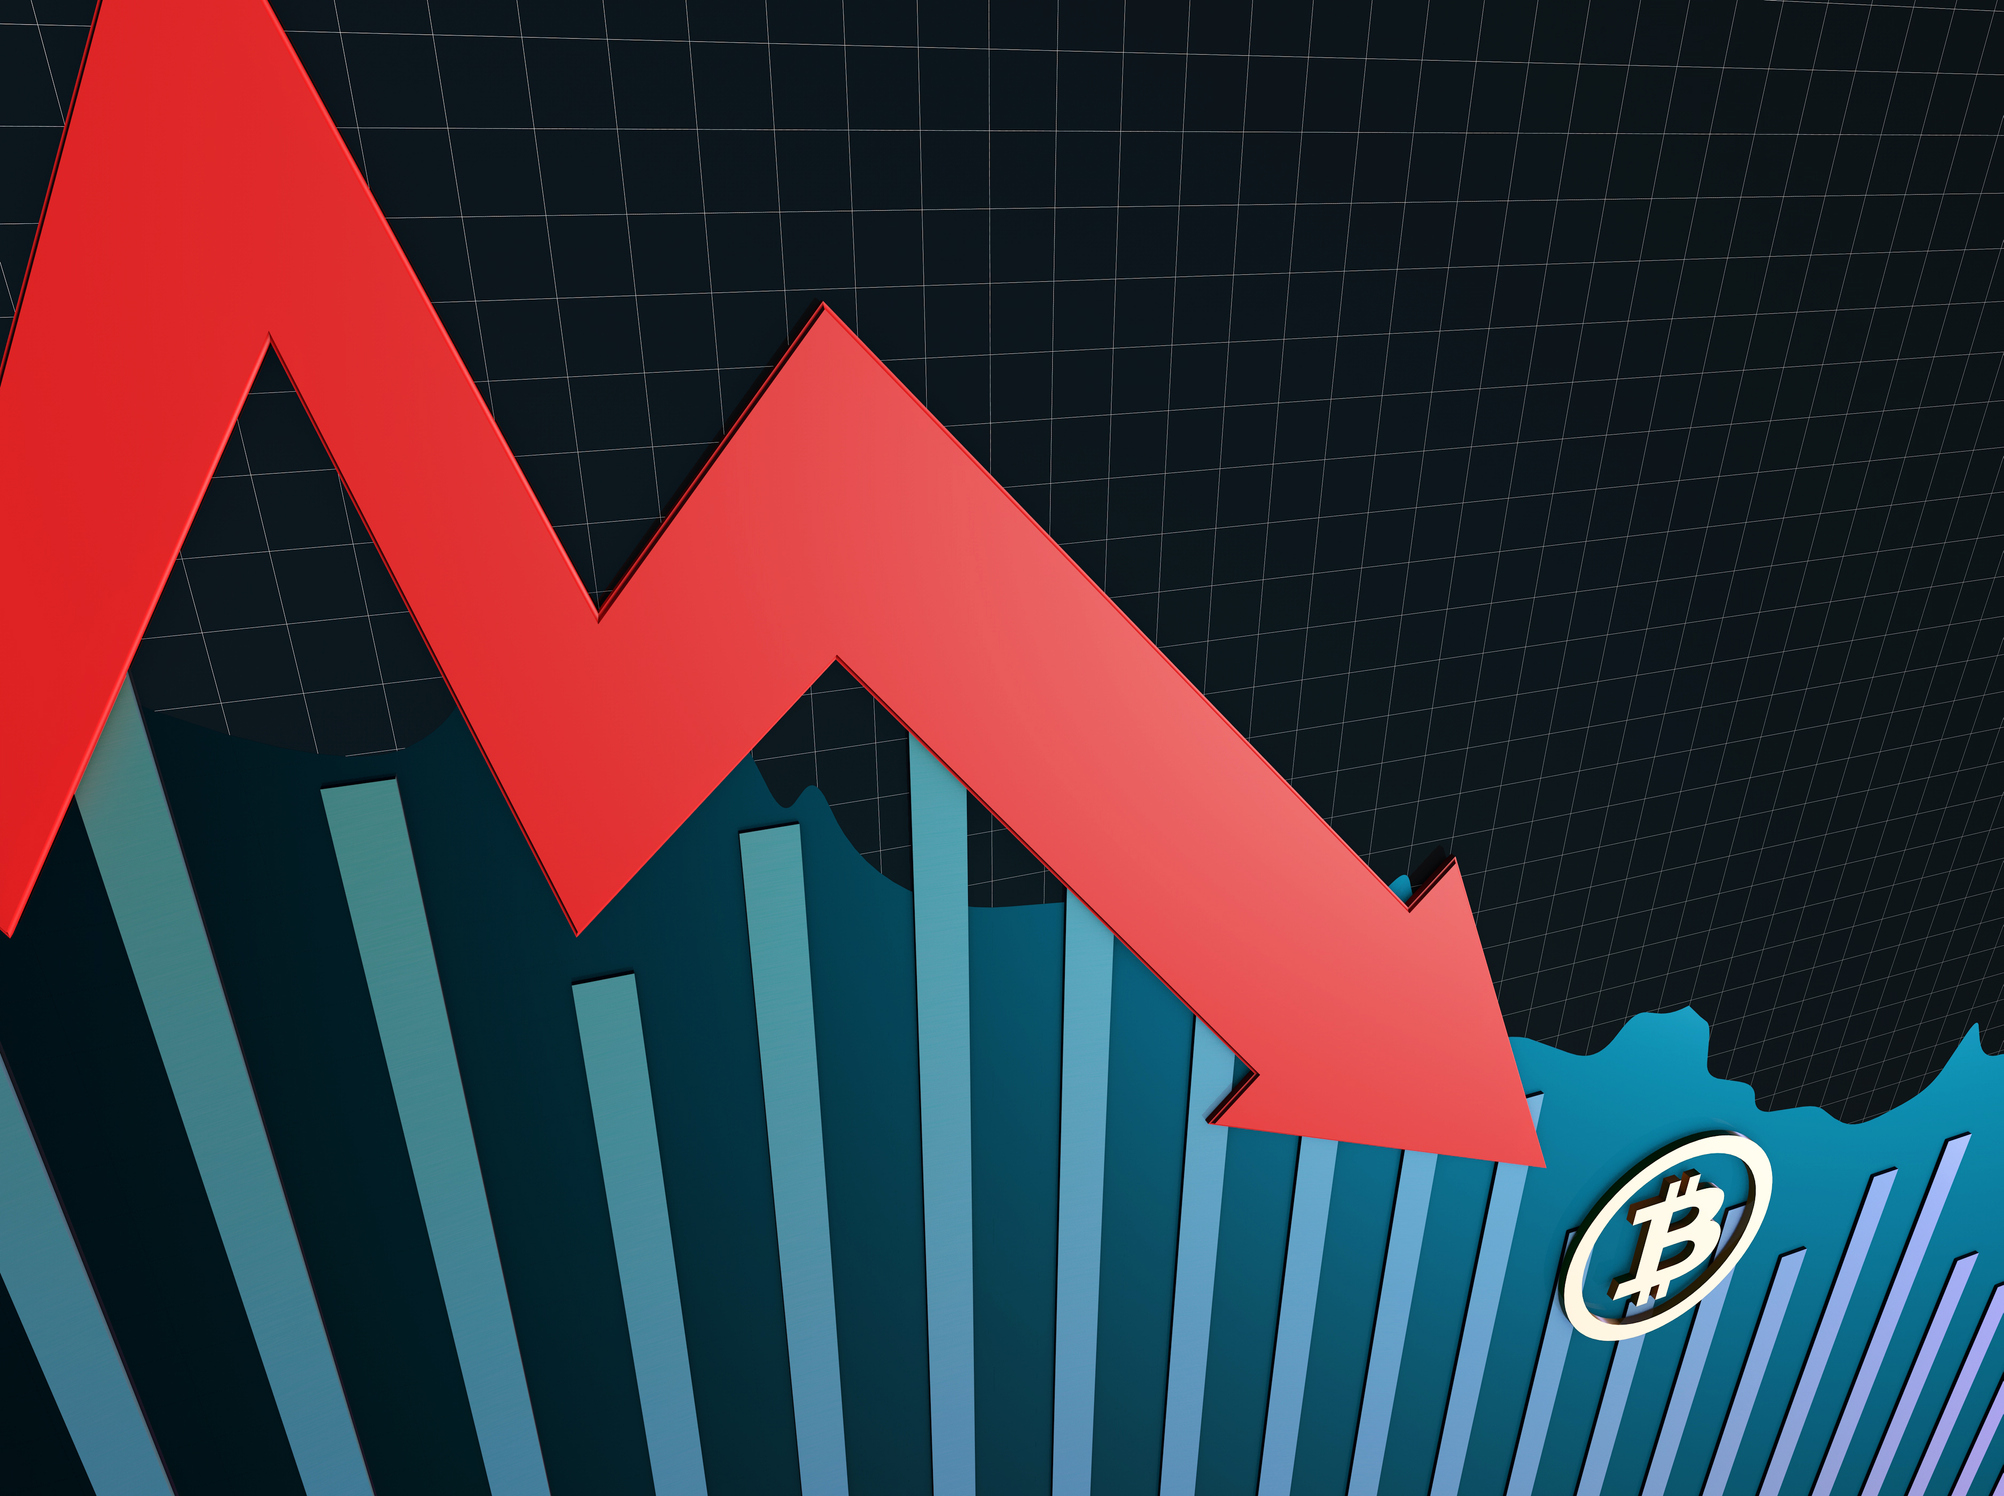 Criptos hoje: Bitcoin opera em alta após fechar junho com queda de 37% e registrar pior trimestre da história